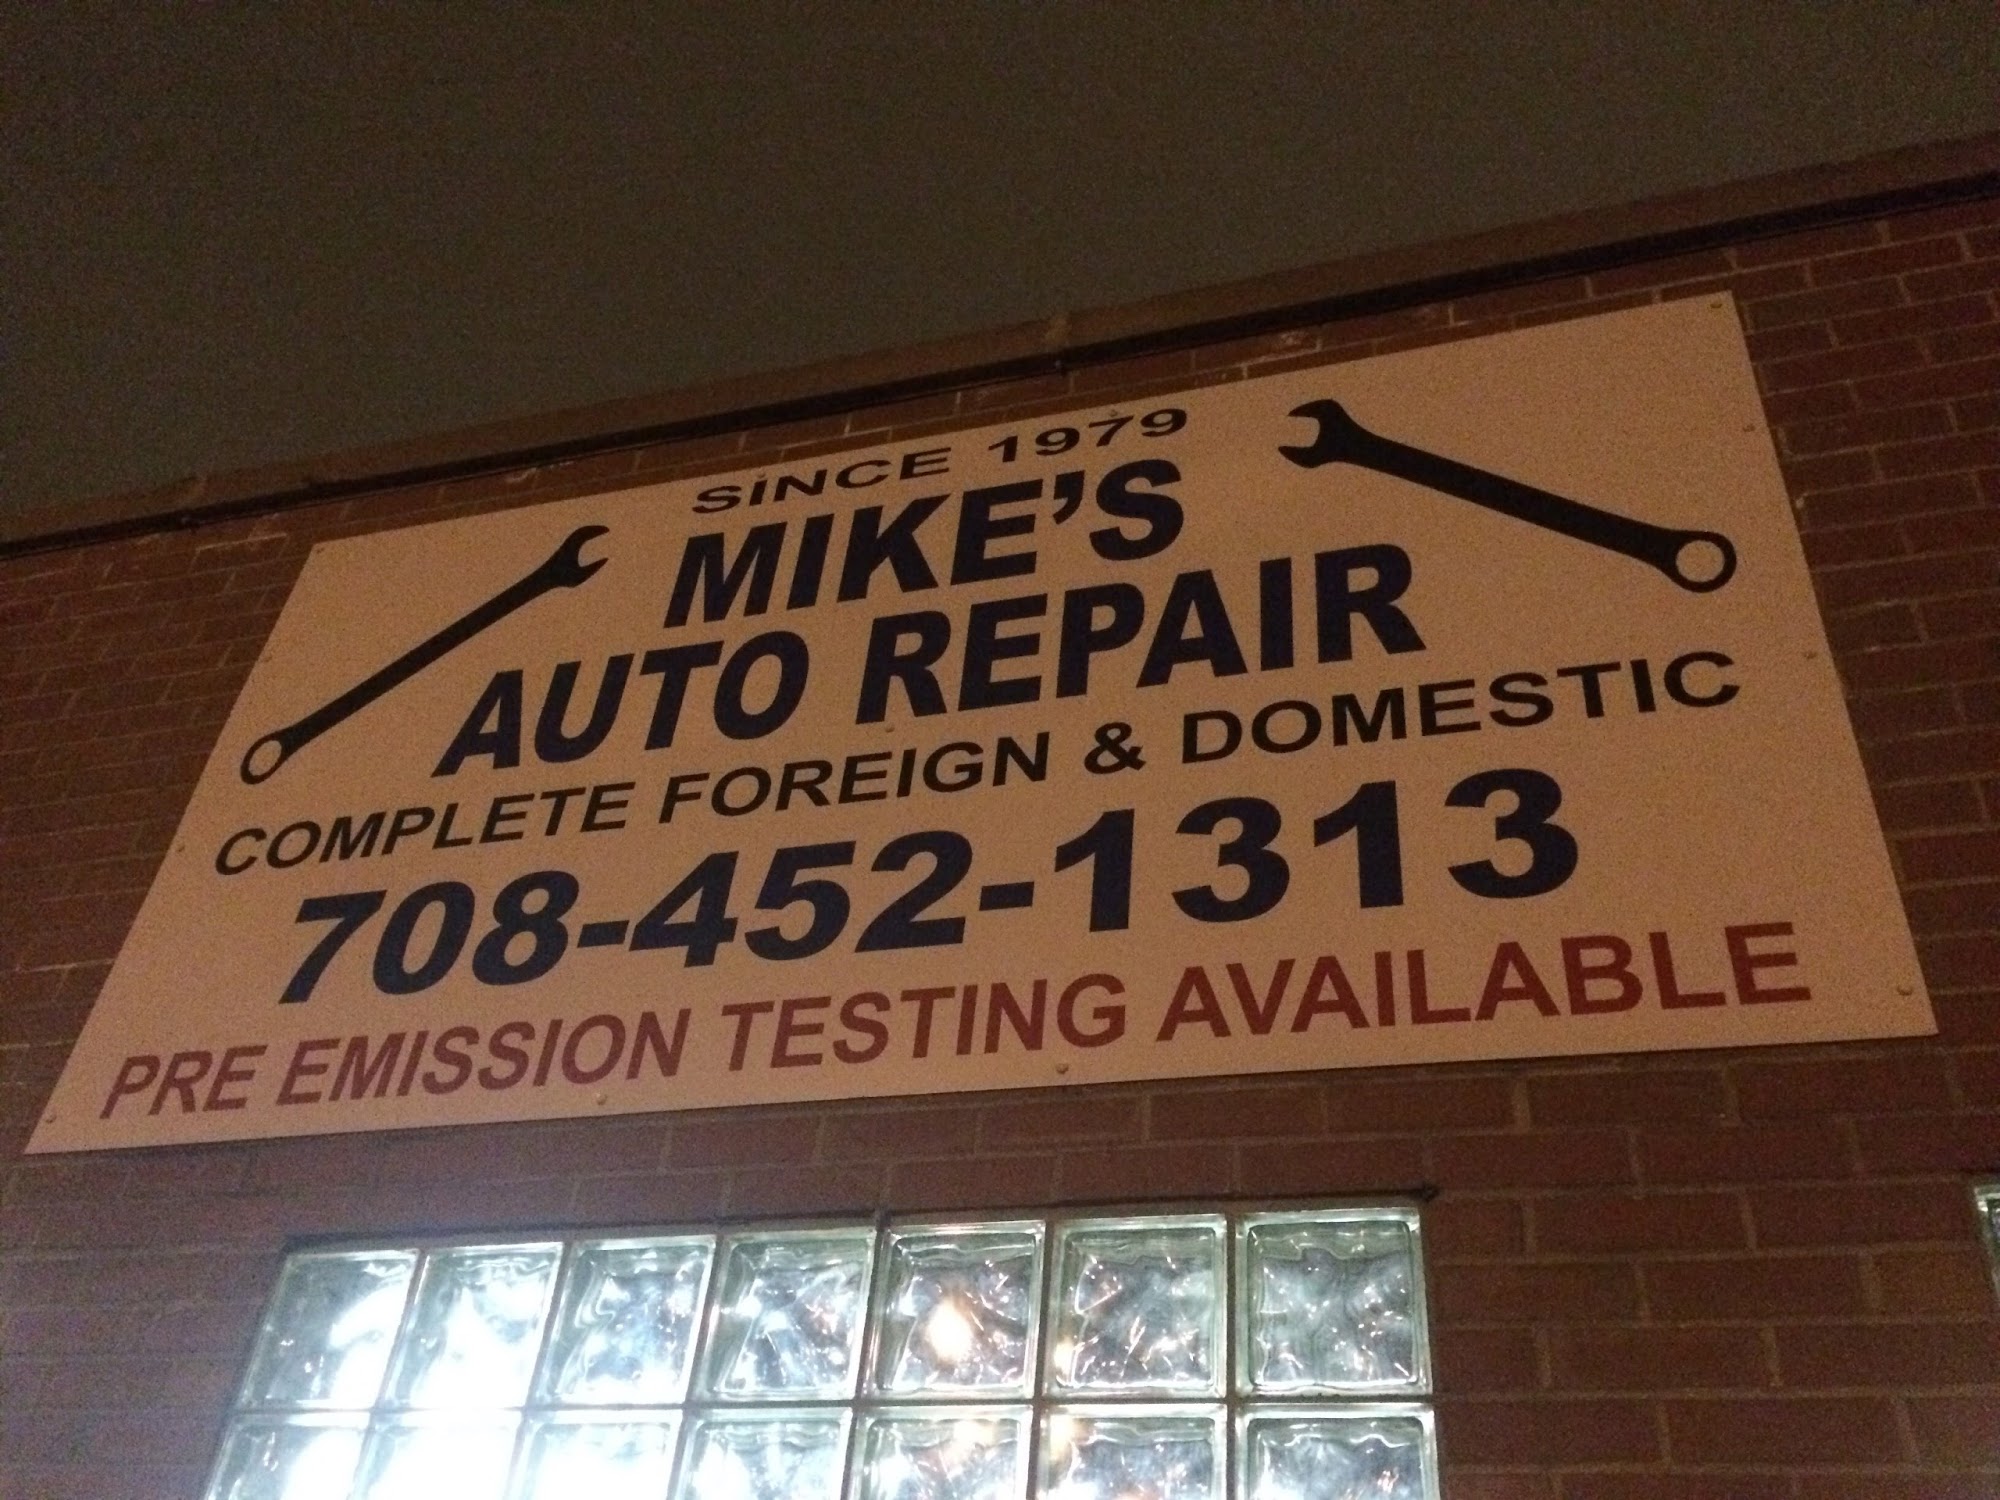 Mike's Auto Repair